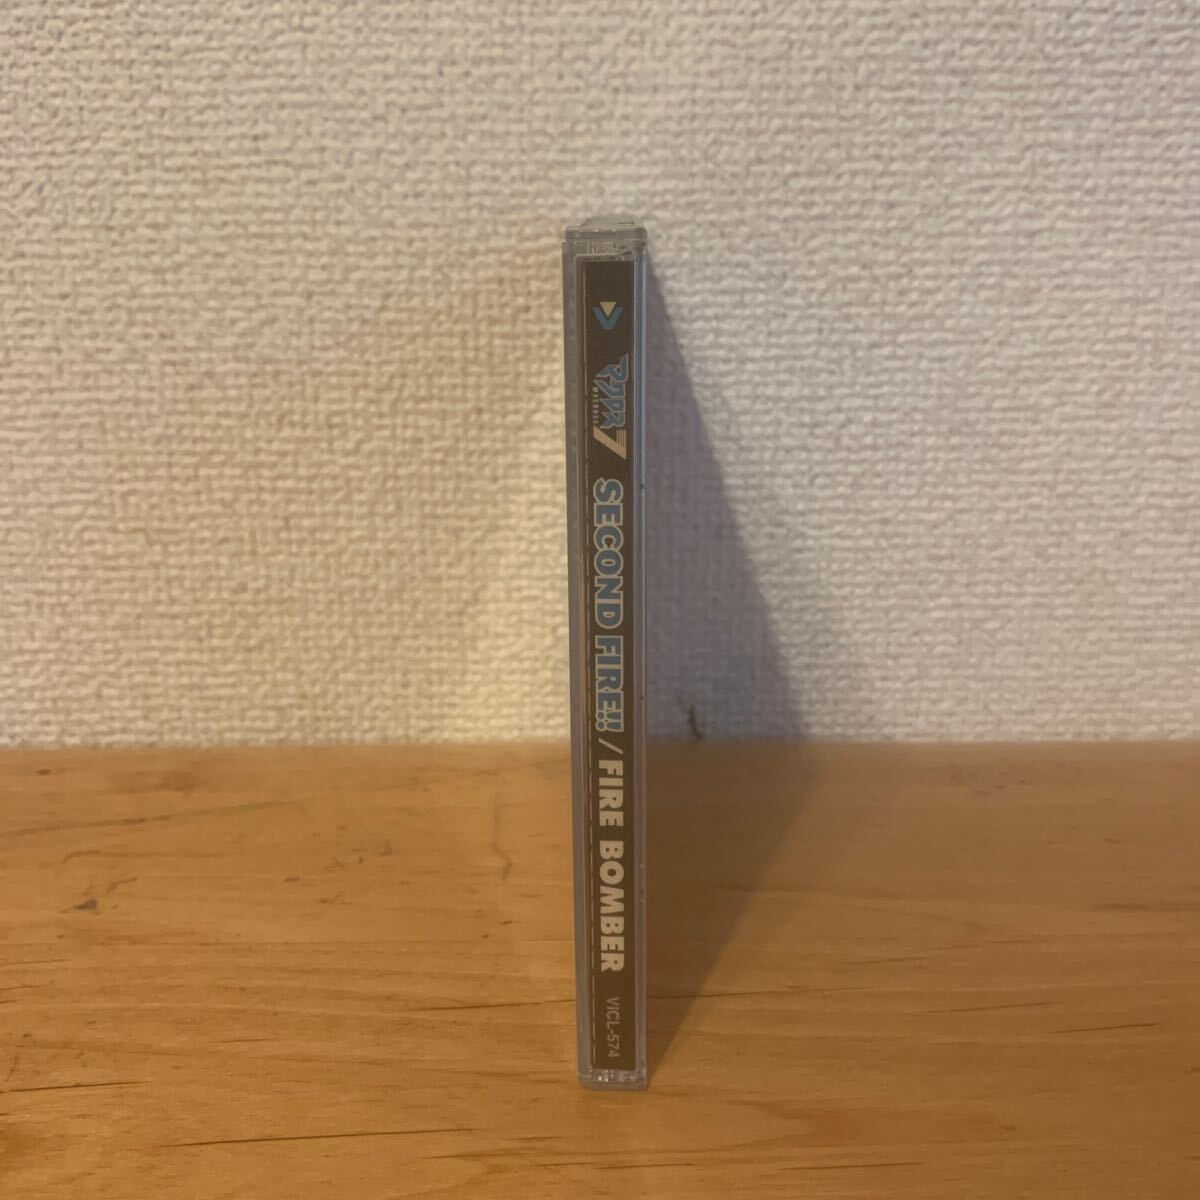 マクロス7 SECOND FIRE!!/FIRE BOMBER CD アルバム 帯あり アニメサントラの画像3